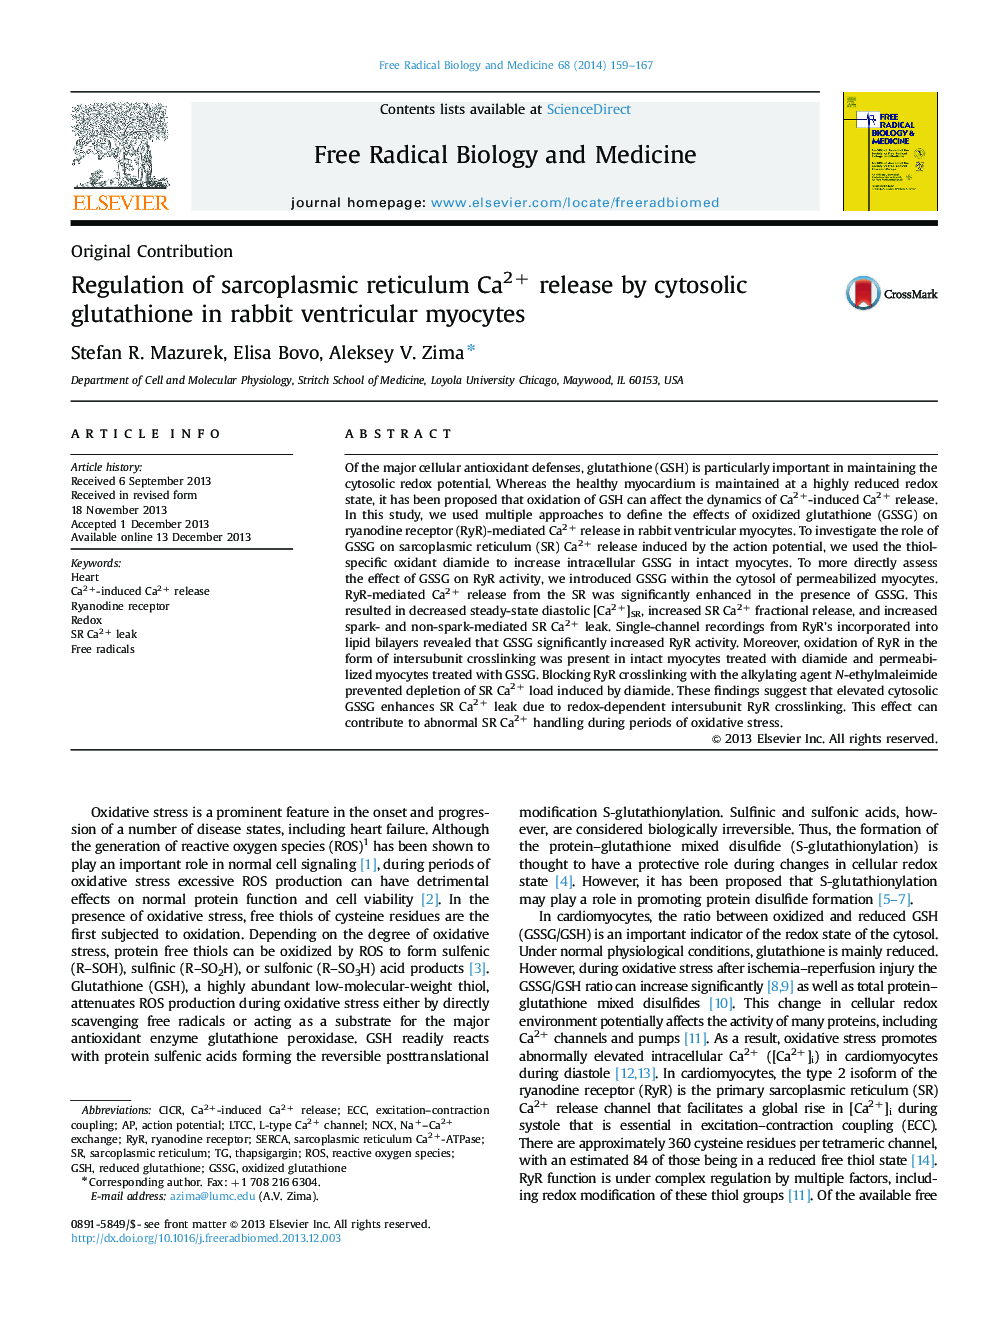 Regulation of sarcoplasmic reticulum Ca2+ release by cytosolic glutathione in rabbit ventricular myocytes